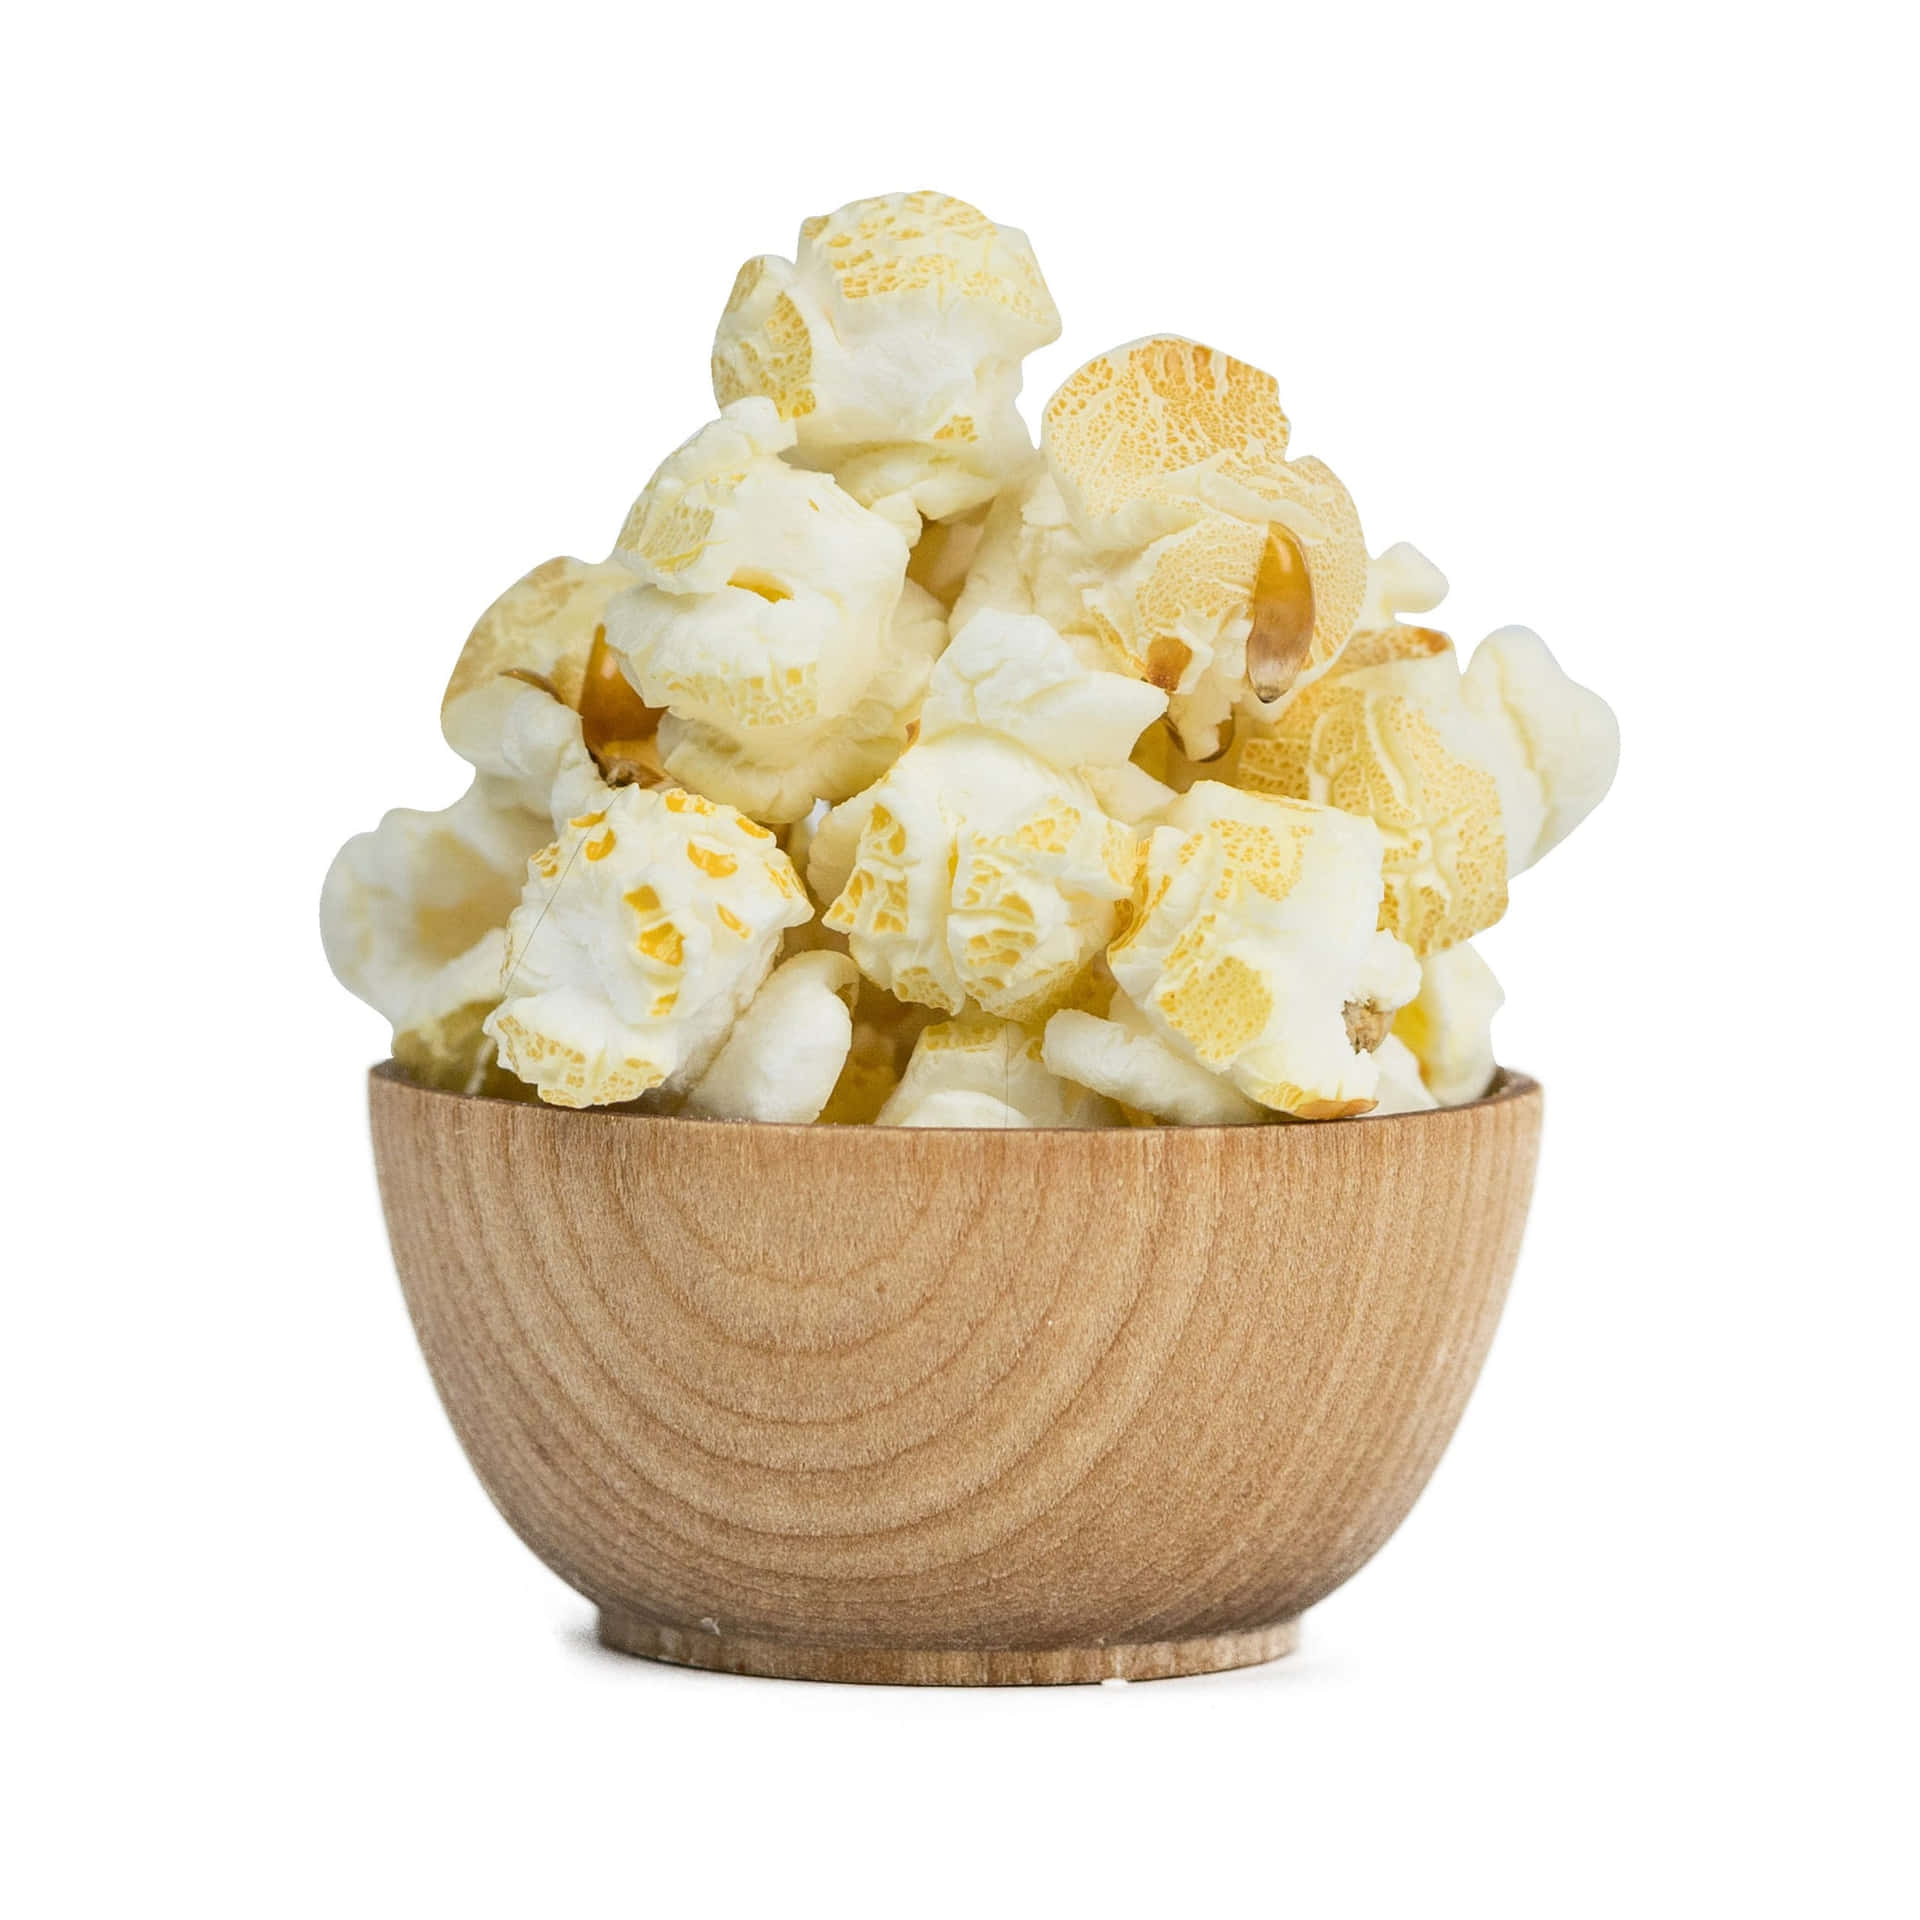 Enskål Med Popcorn På En Vit Bakgrund